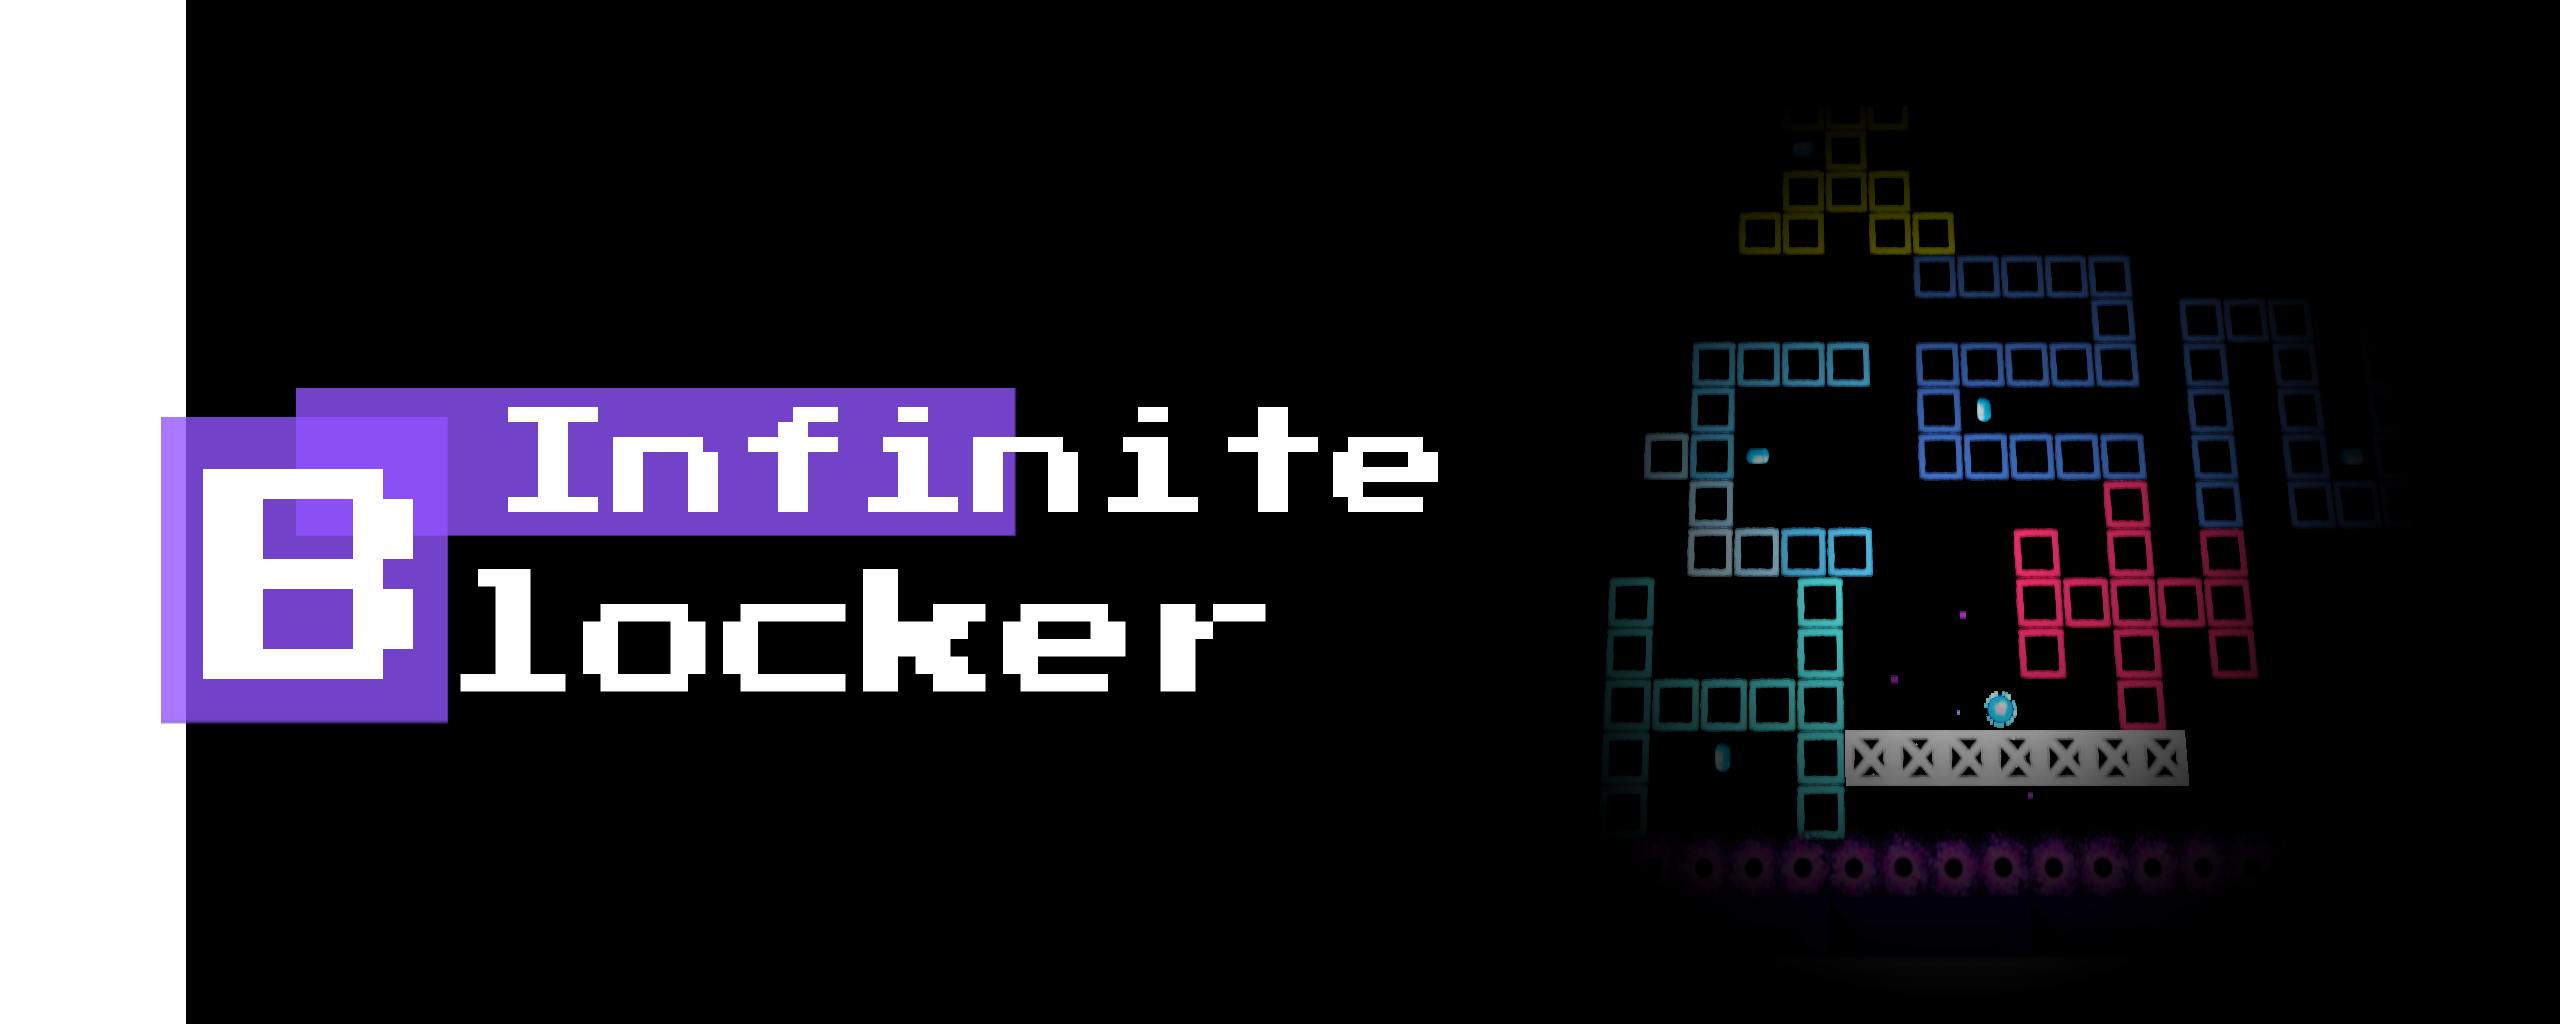 Infinite Blocker